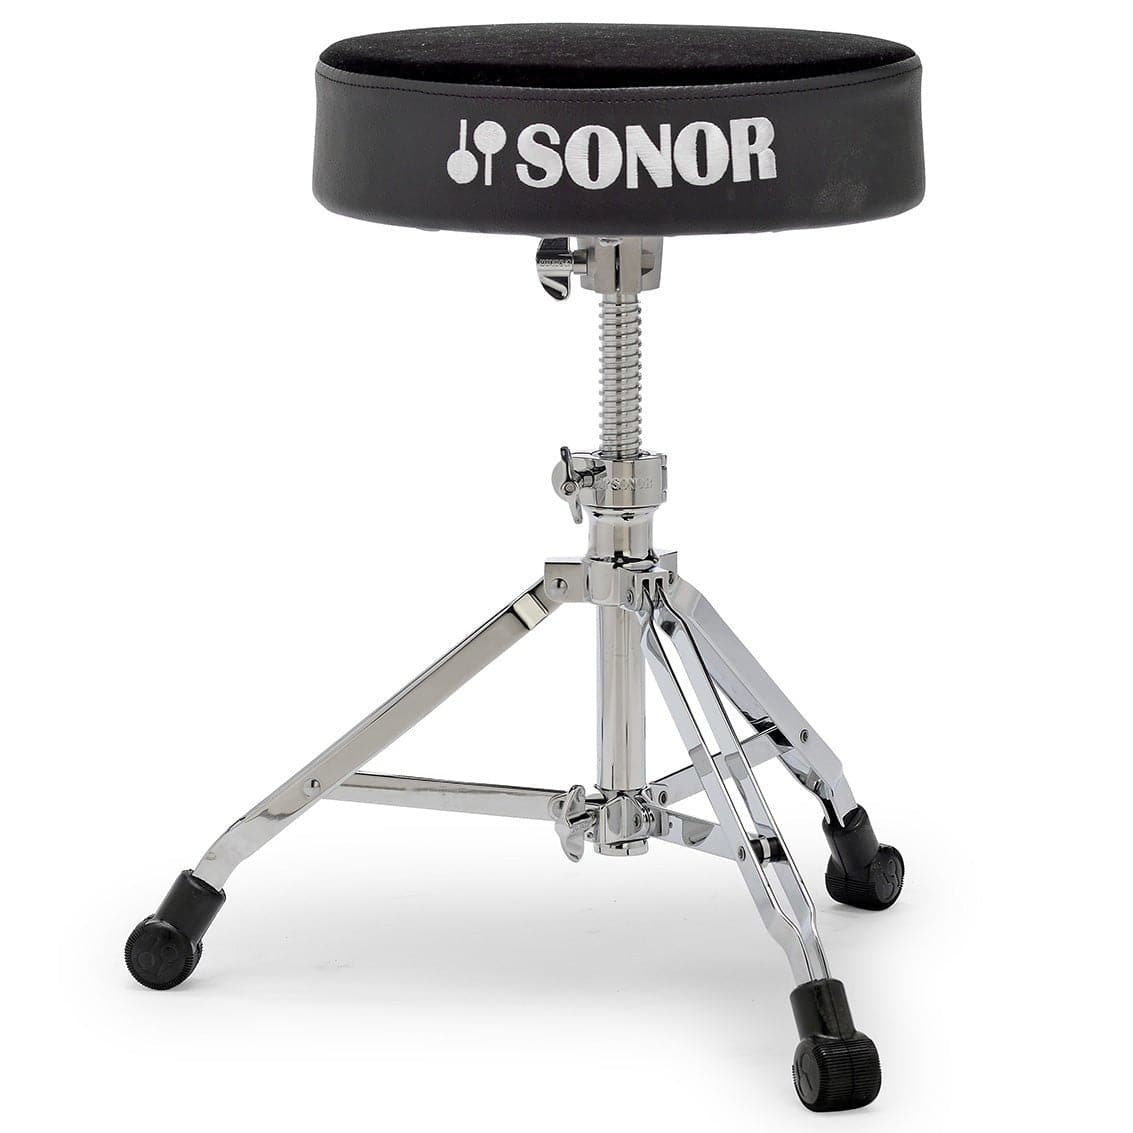 Sonor 4000 Drum Throne Round w/ Spindle Adjustment